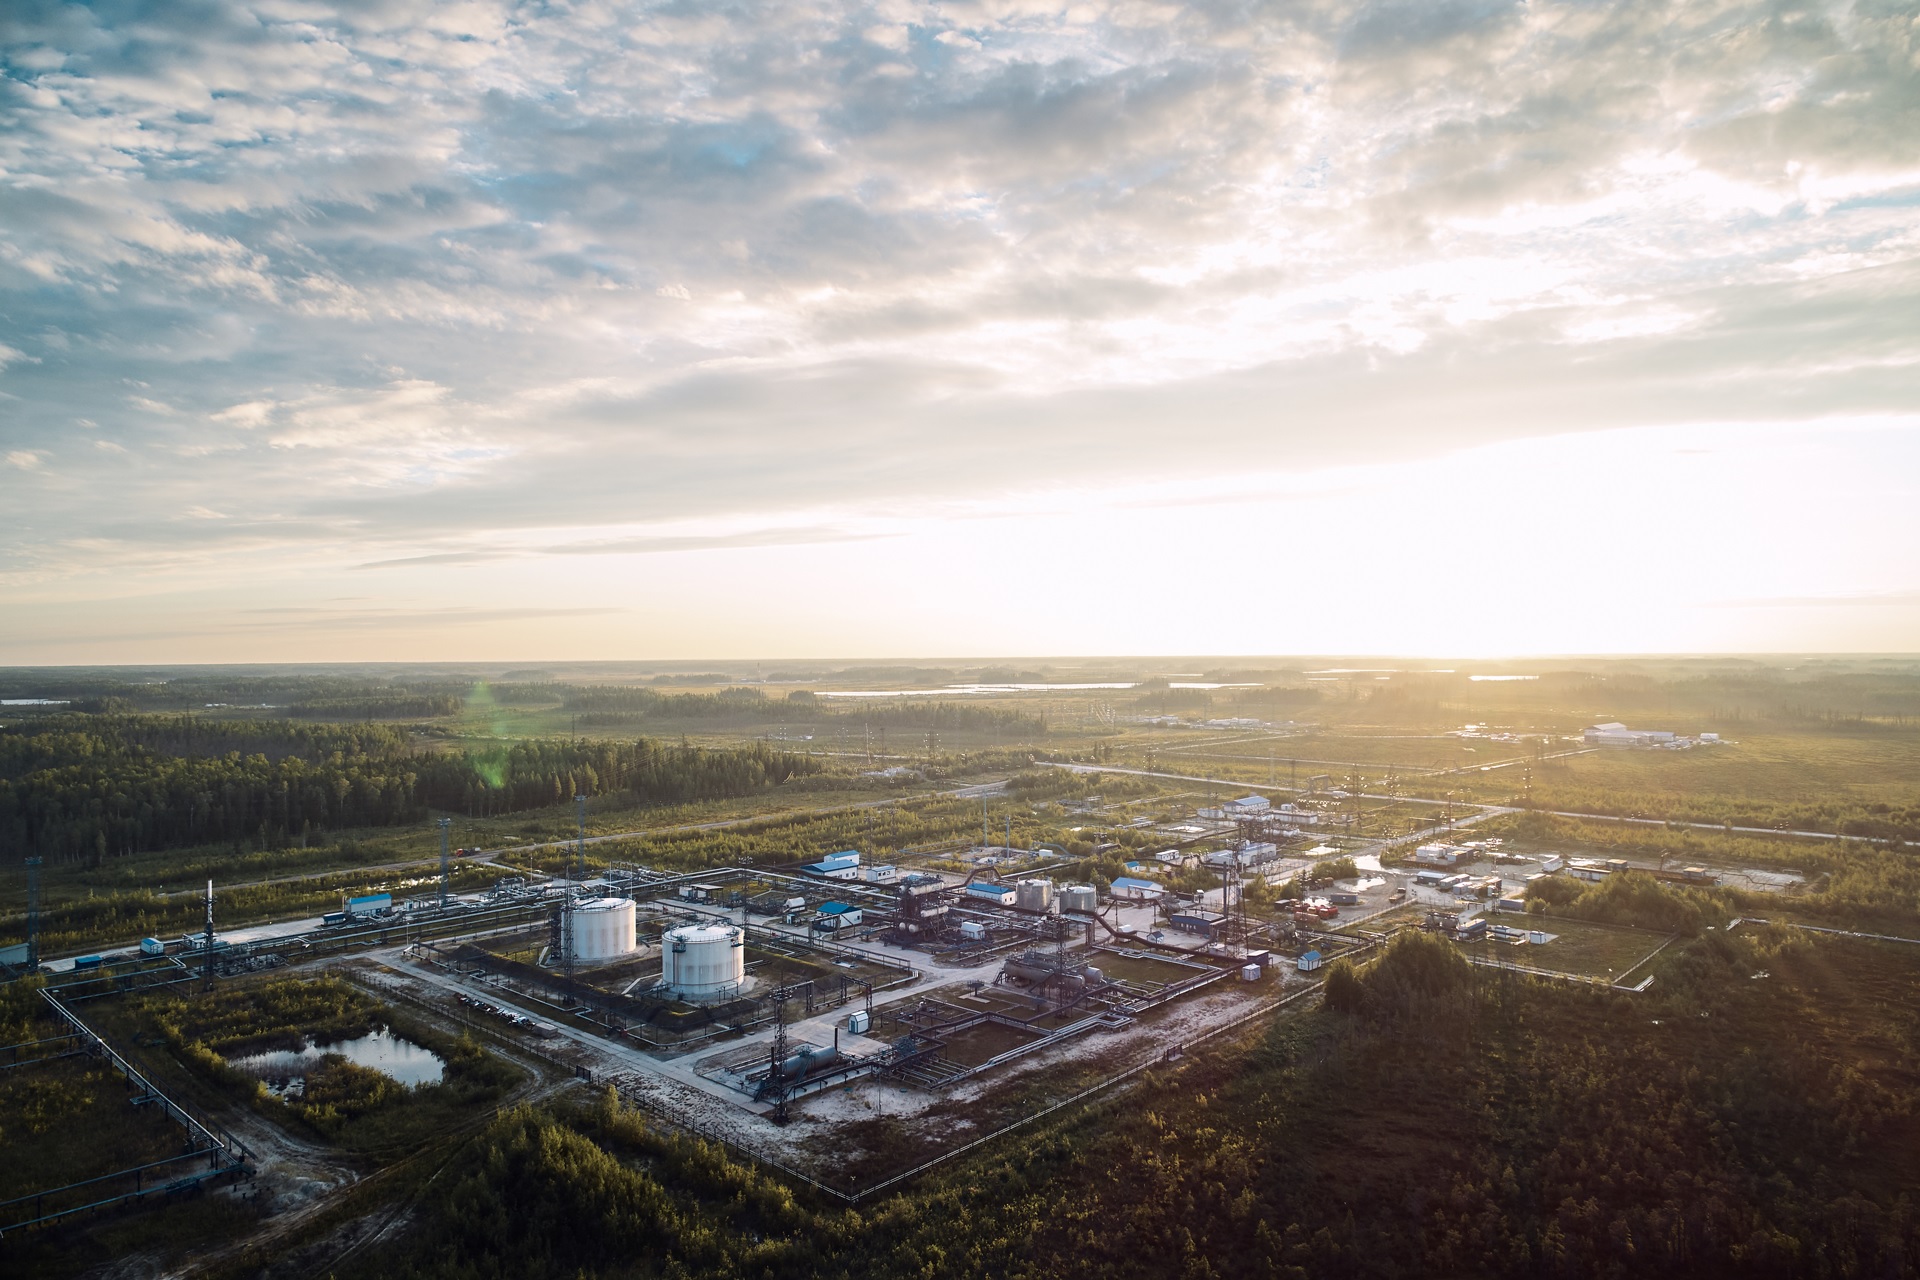 Rusia apunta al fracking petrolero ante caída de sus reservas convencionales